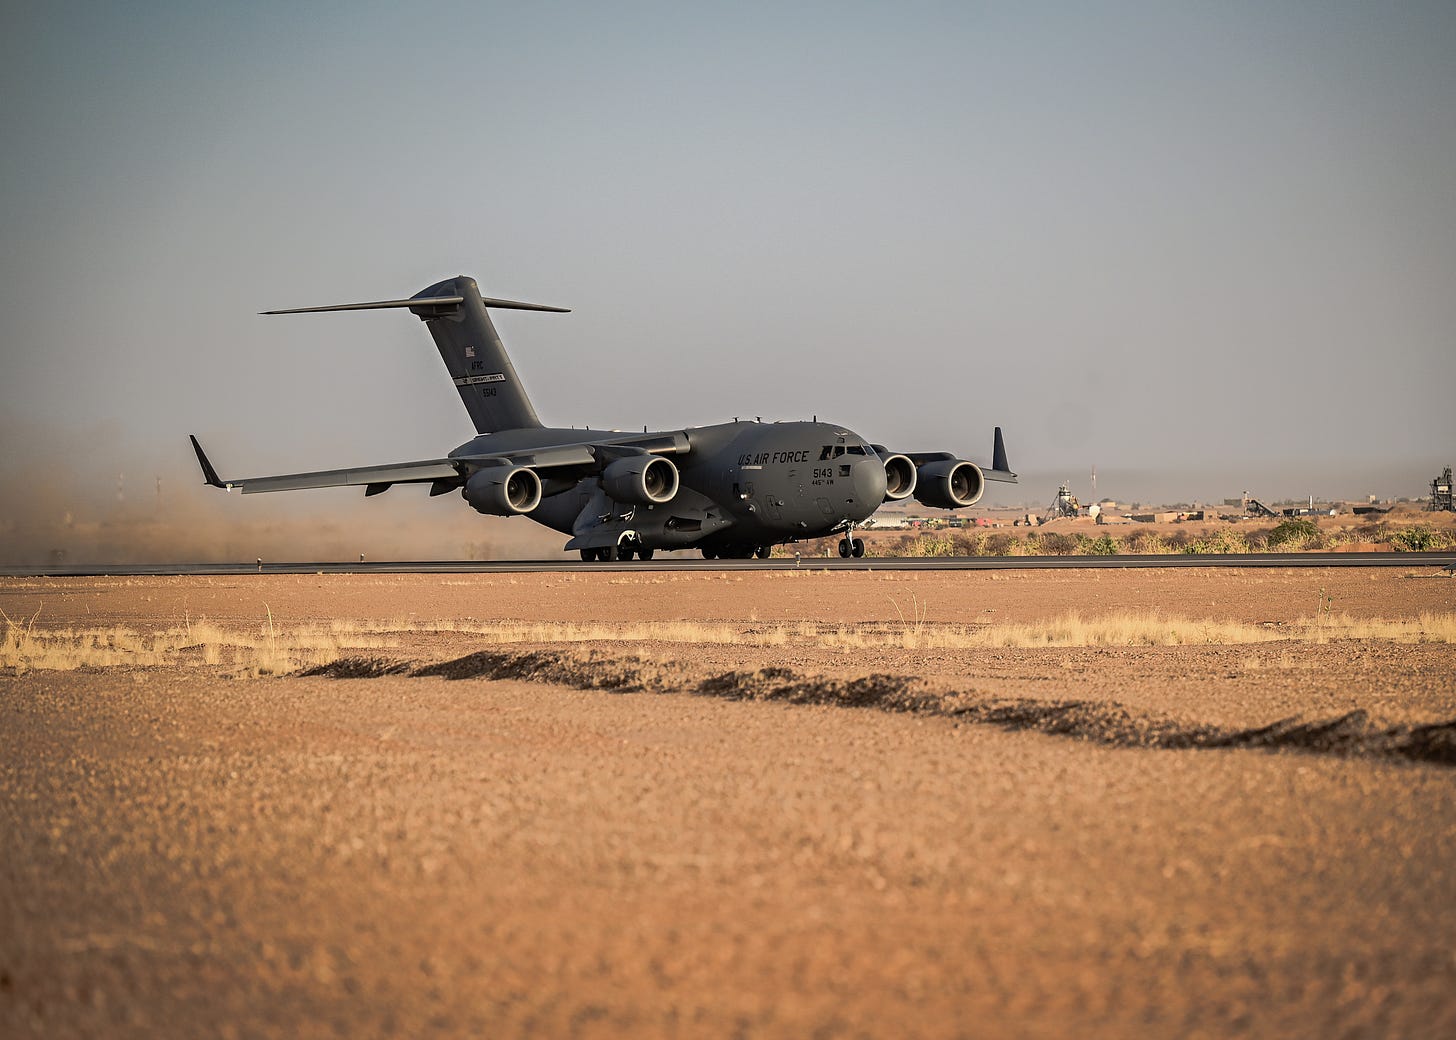 File:C-17 takeoff Niger Air Base 201.jpg - Wikipedia